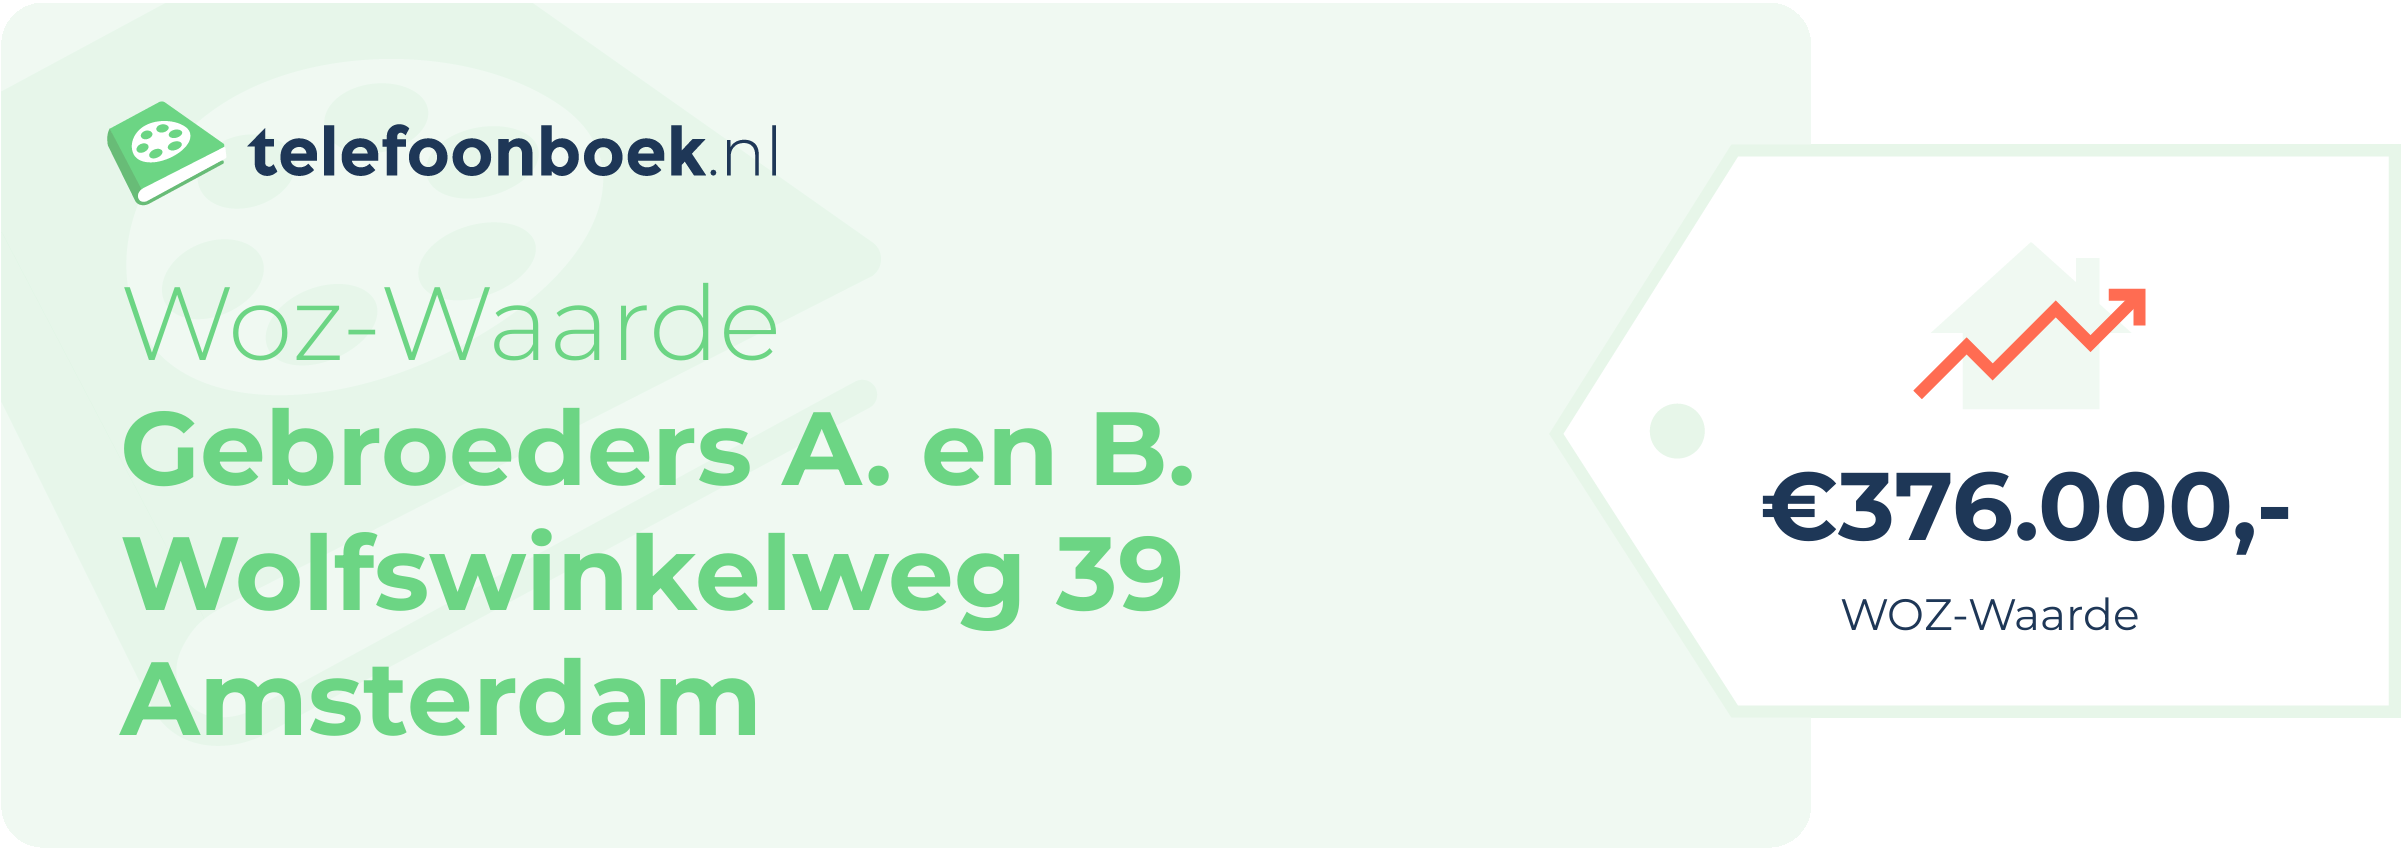 WOZ-waarde Gebroeders A. En B. Wolfswinkelweg 39 Amsterdam